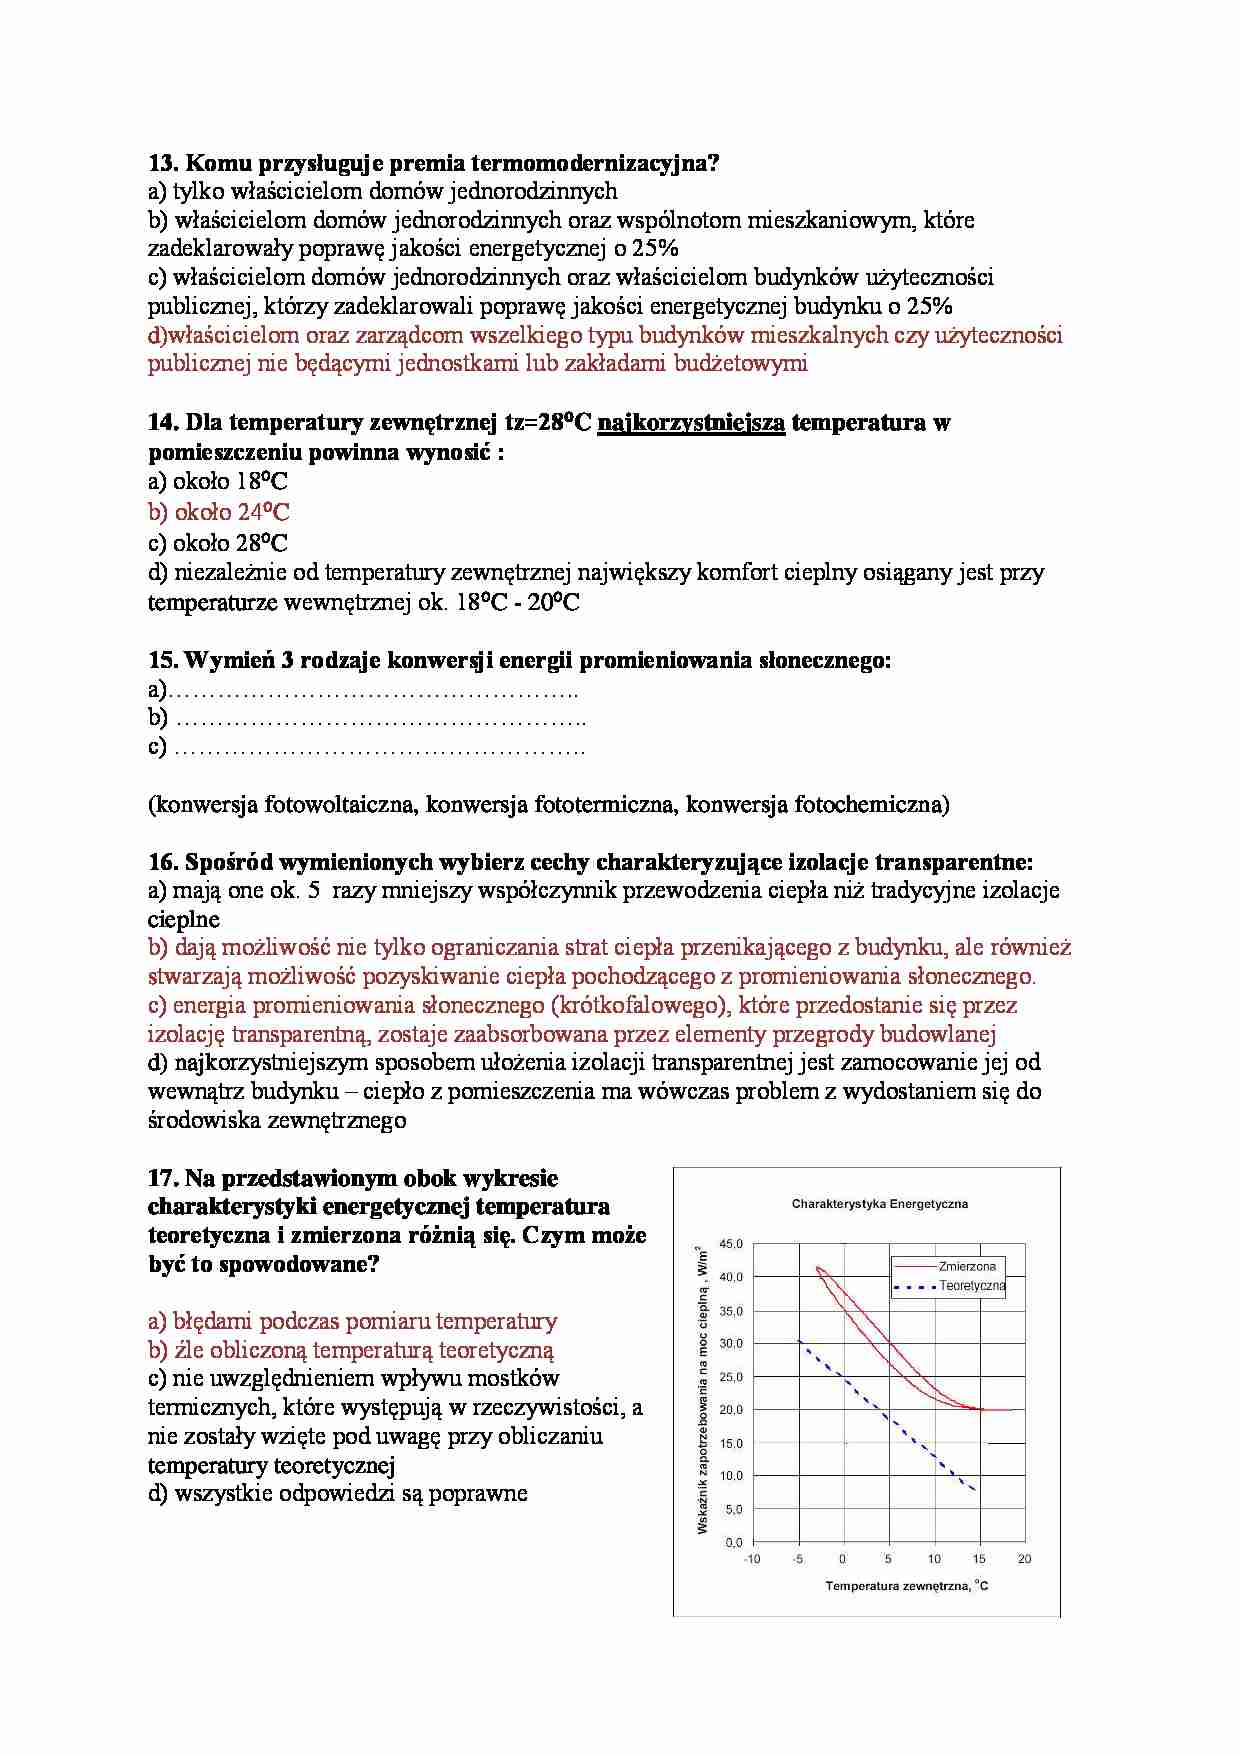 Fizyka budowli - pytania egzaminacyjne Part 13 - strona 1